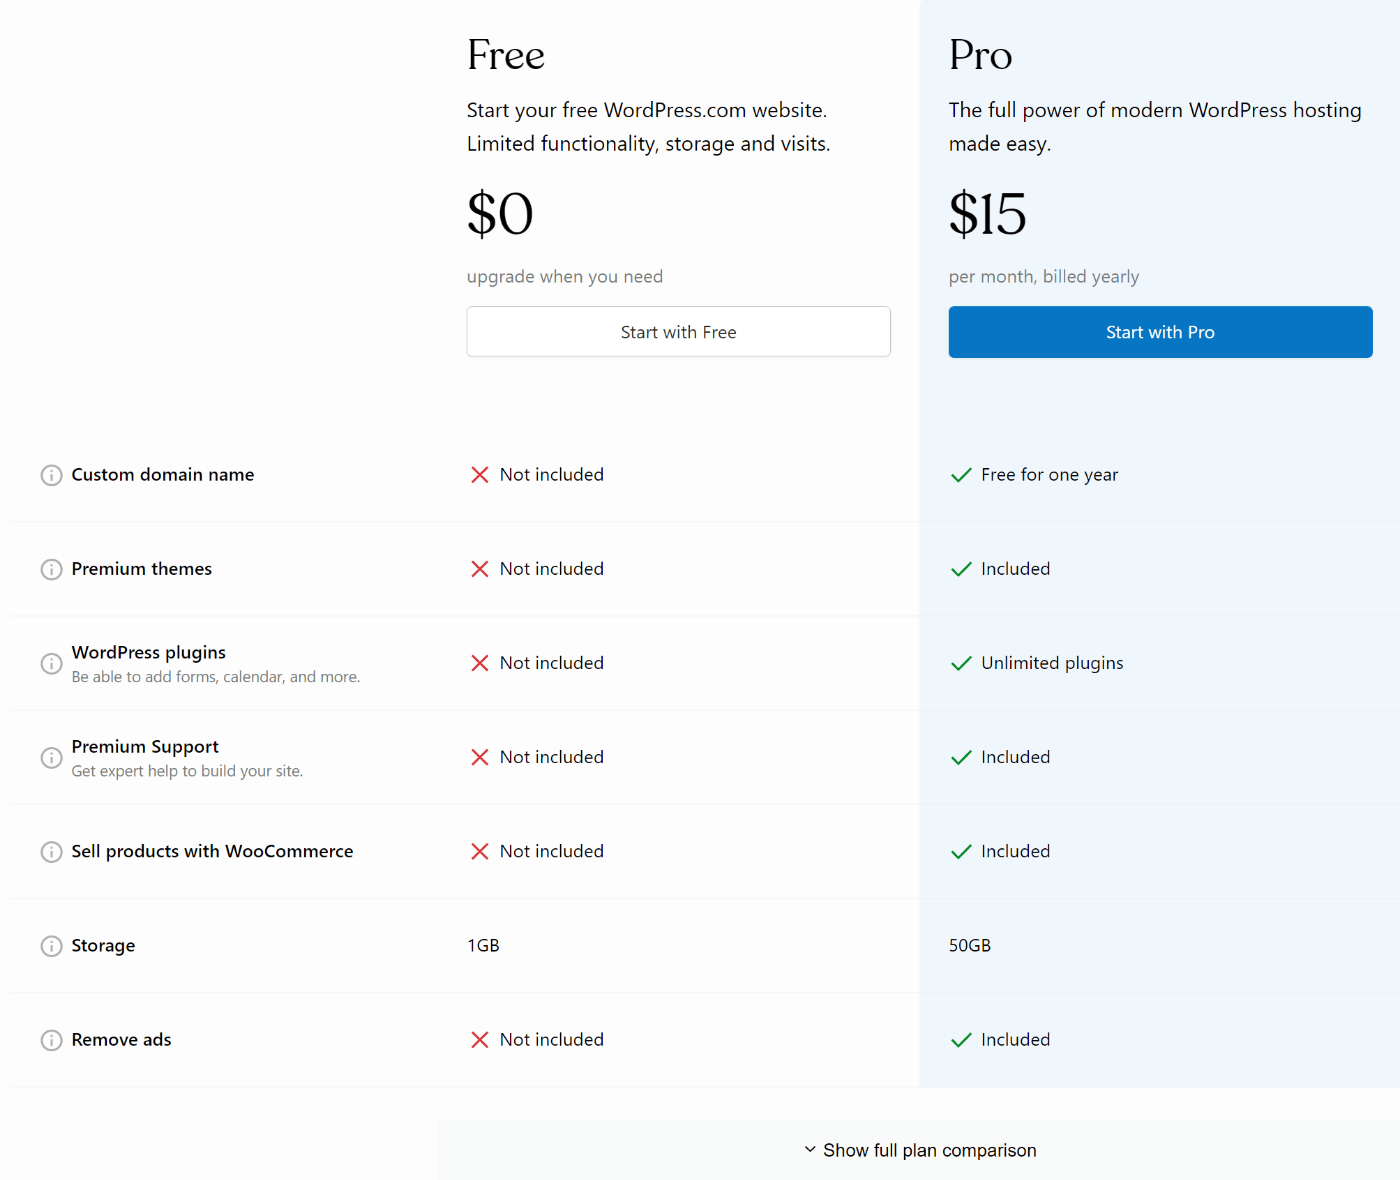 Precios de WordPress.com (a partir de mayo de 2022)